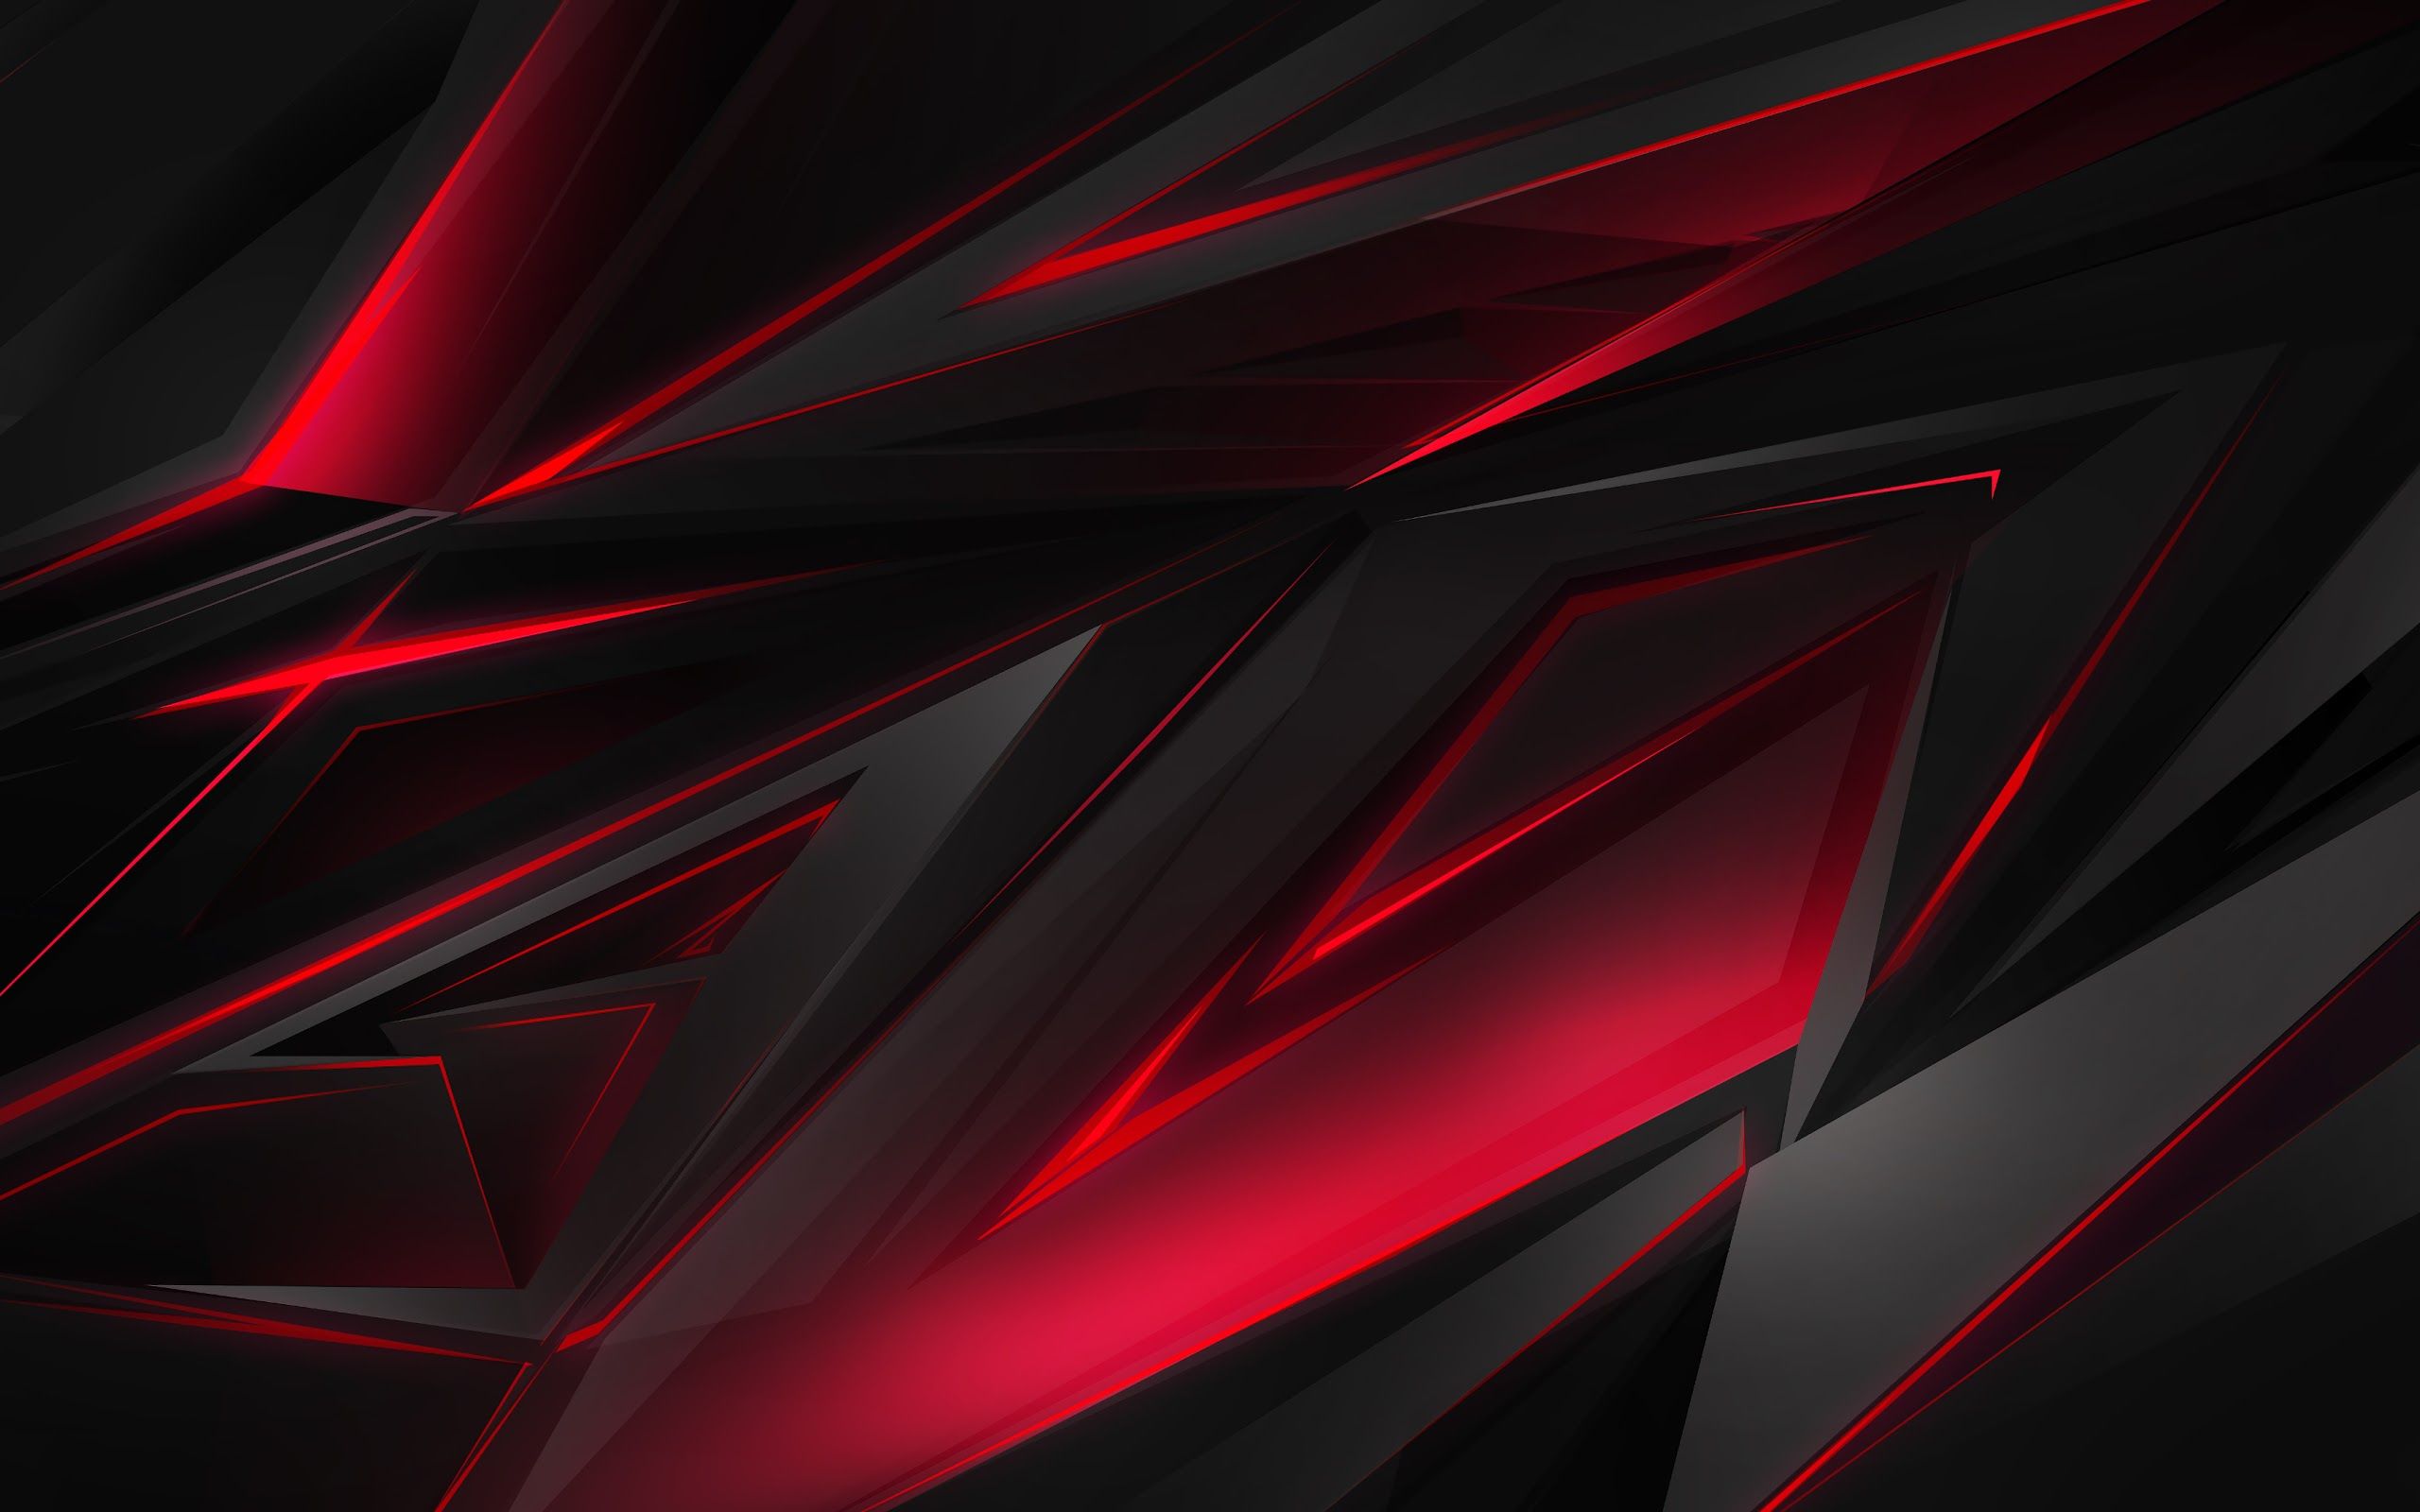 Tải ngay Red abstract background 4k đẹp nhất, miễn phí